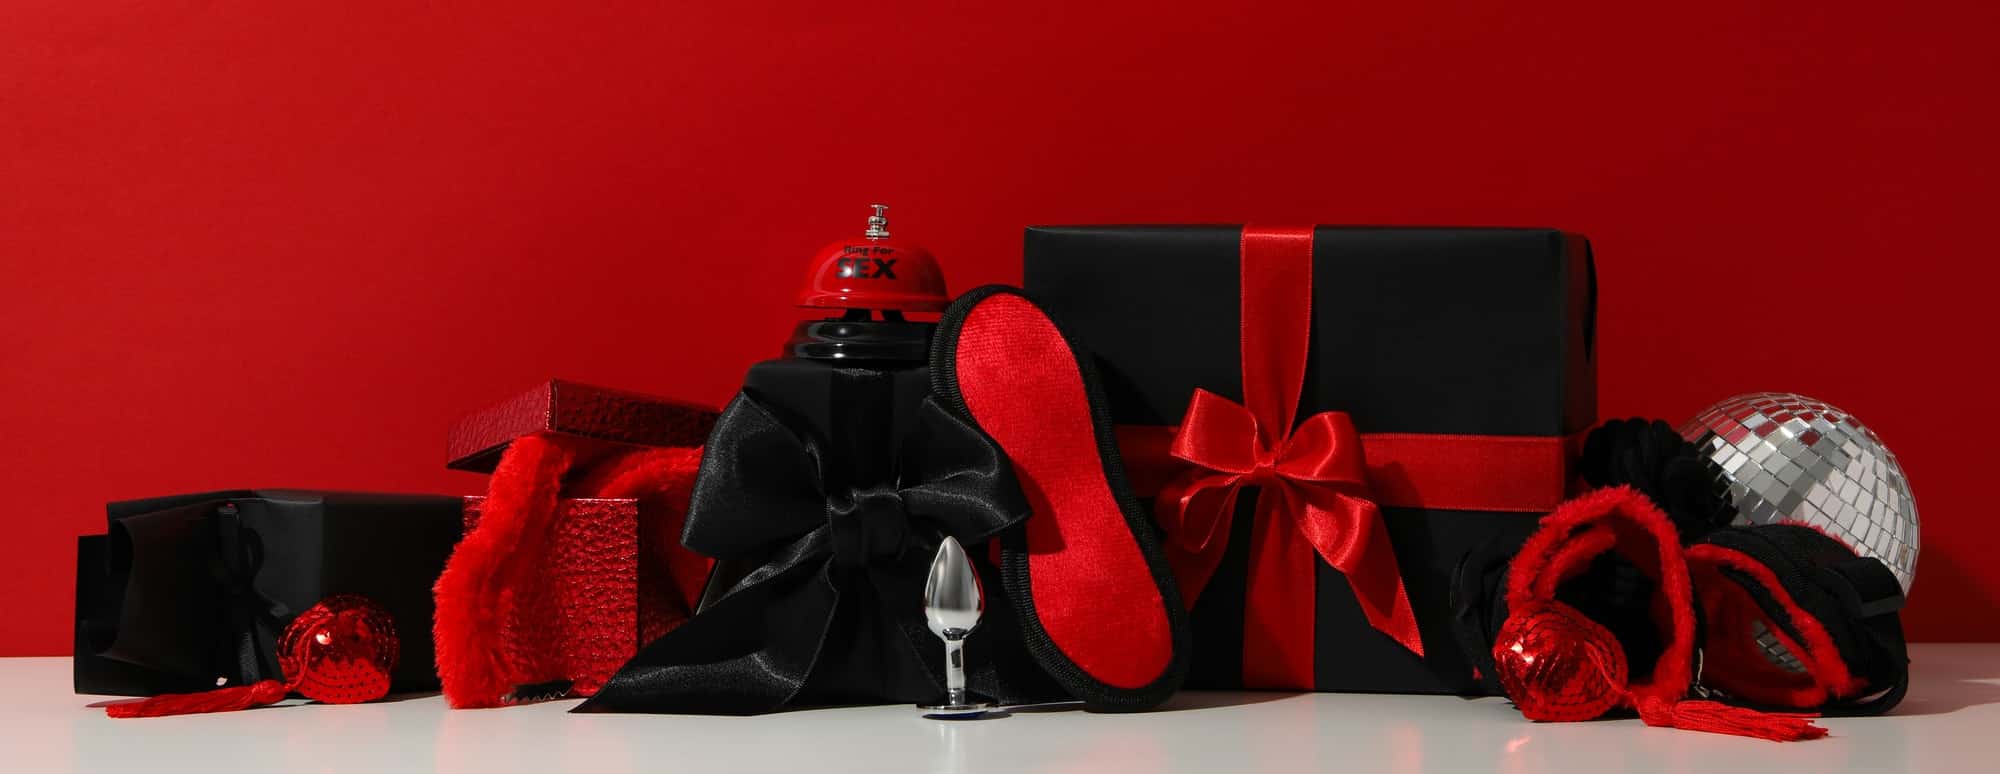 Rød bakgrunn med sexleketøy og gaver. Illustrasjon av en hot valentindag-feiring